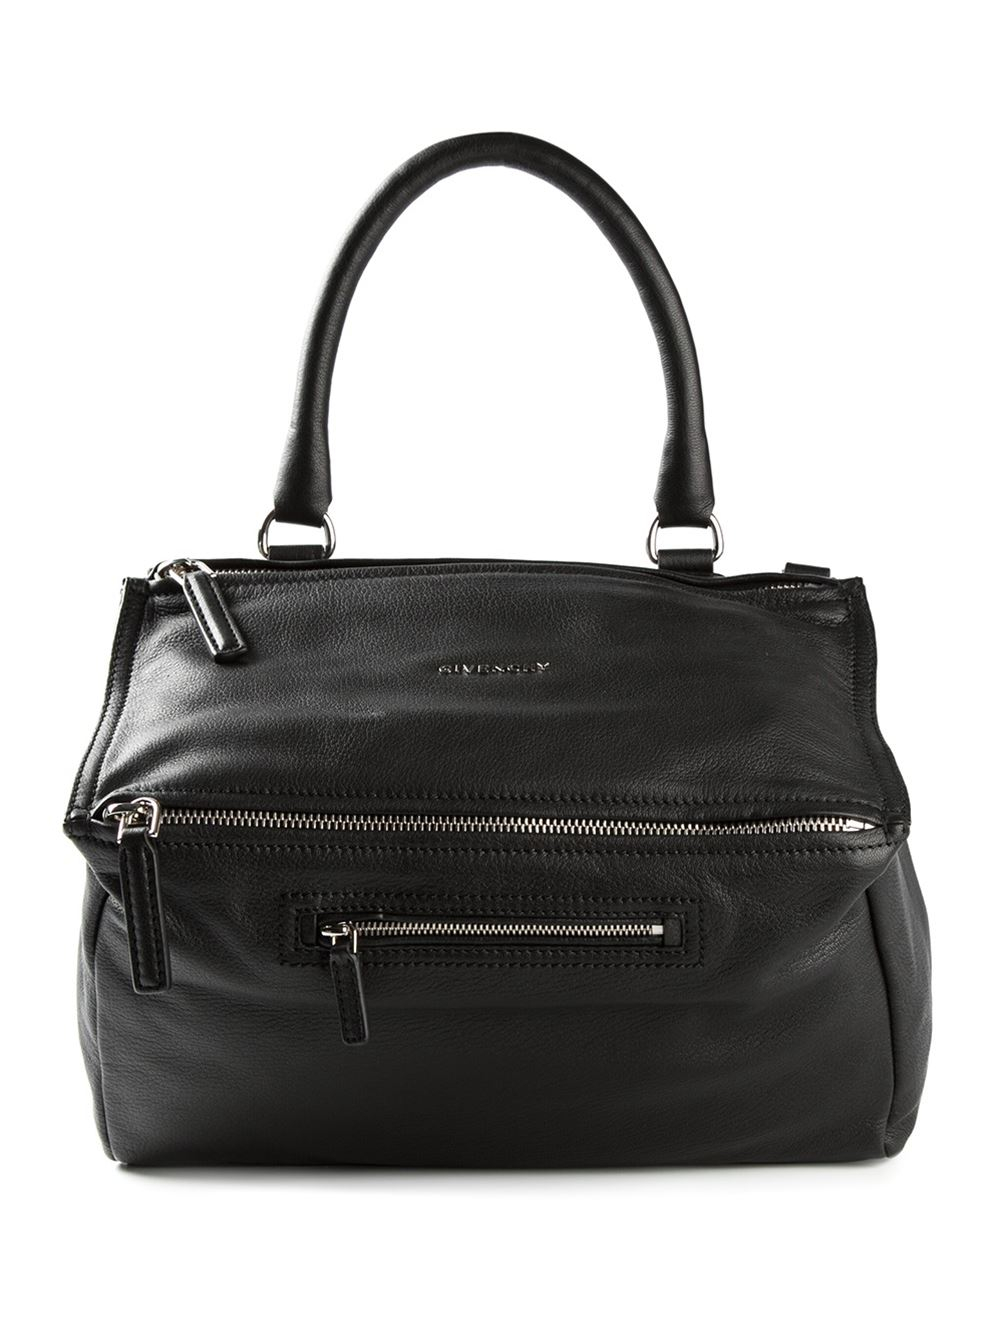 Givenchy Medium 'pandora' Shoulder Bag in Black | Lyst